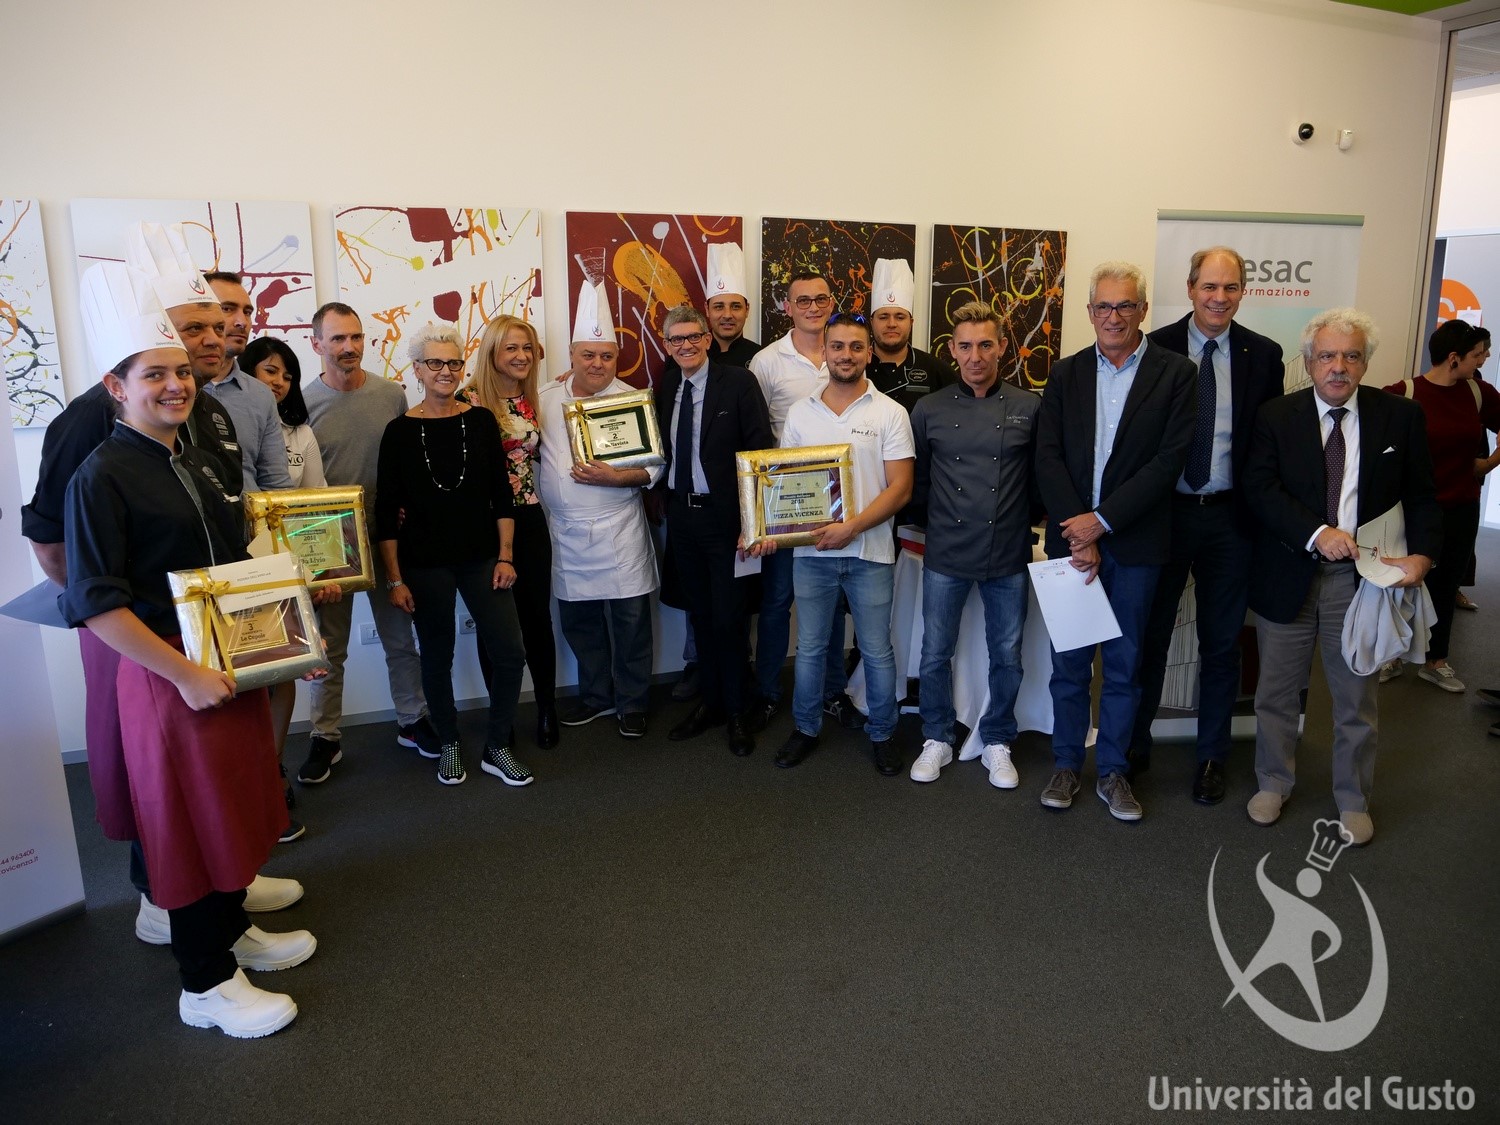 Foto di gruppo per concorrenti e giuria della sfida "Pizza Vicenza"